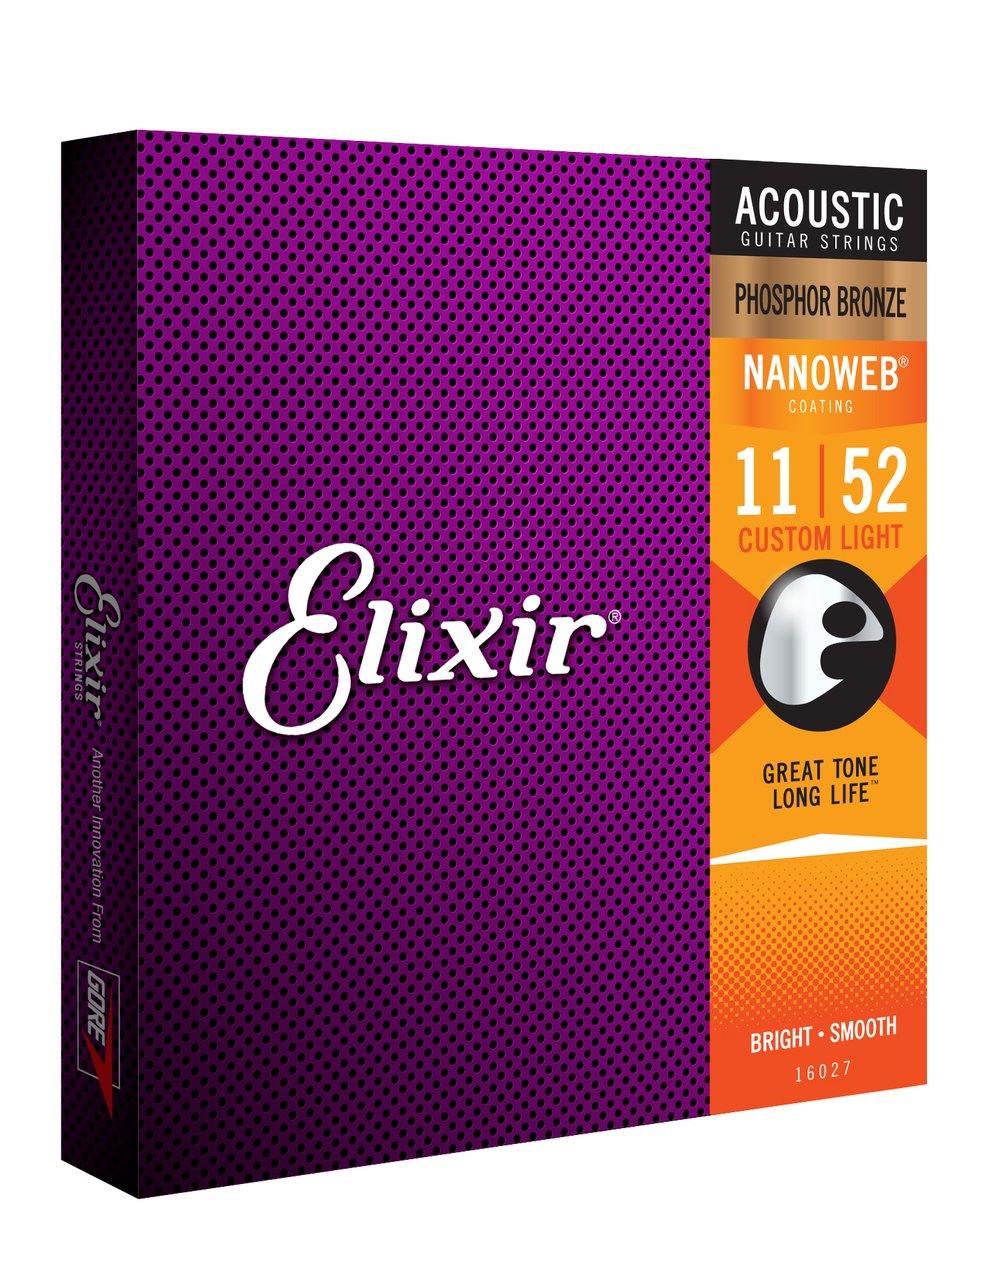 Elixir 11/52 Acoustic Guitar Strings Ctd-Ph/Br C/Lt Nanowe - Strings - Acoustic Guitar by Elixir at Muso's Stuff